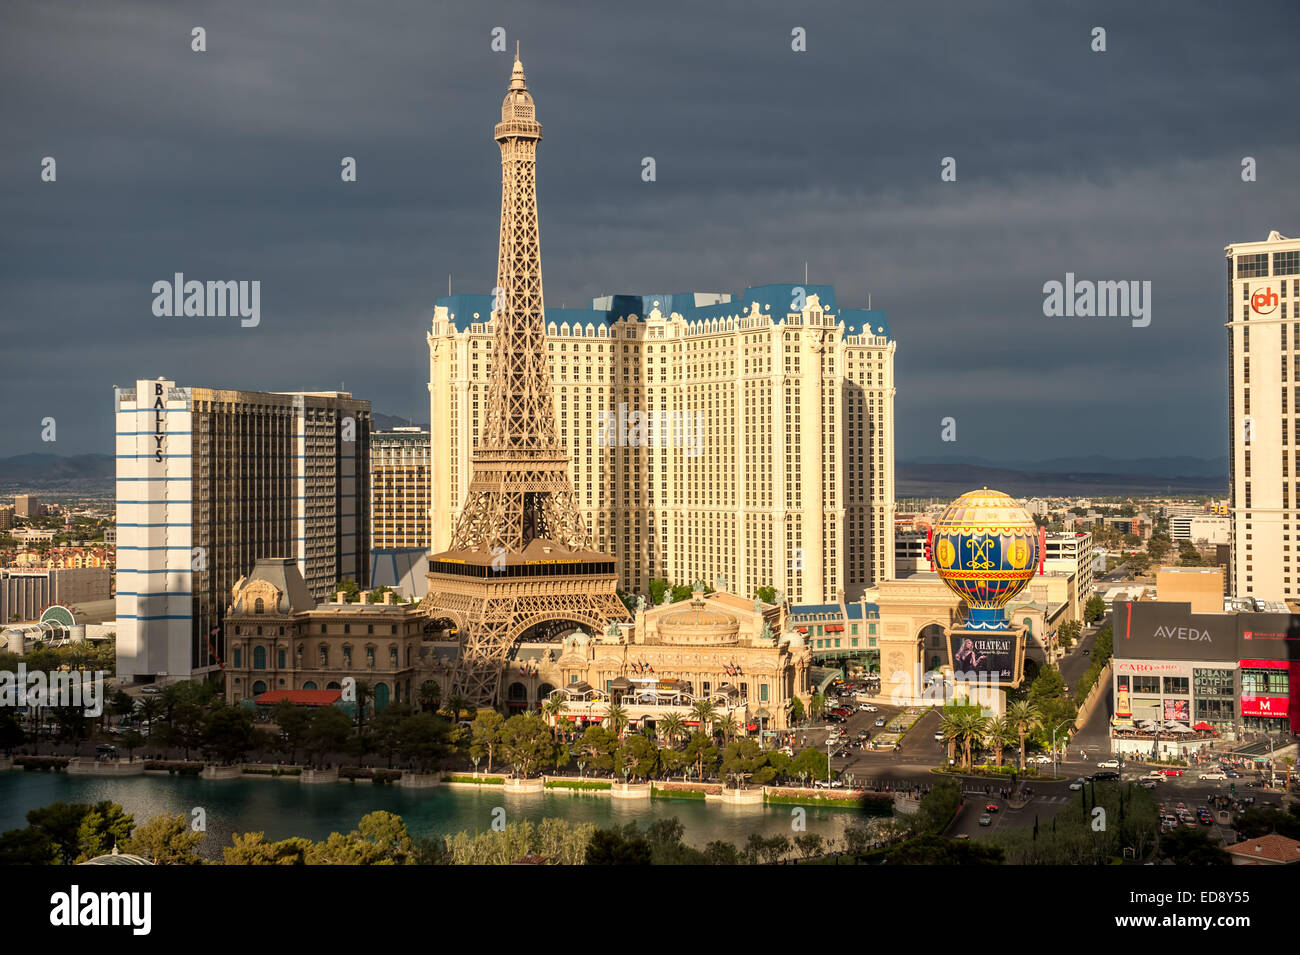 Las Vegas Boulevard por la noche con el Paris Las Vegas y Bally's hoteles y casinos como se ve en el lago en el Bellagio. Foto de stock